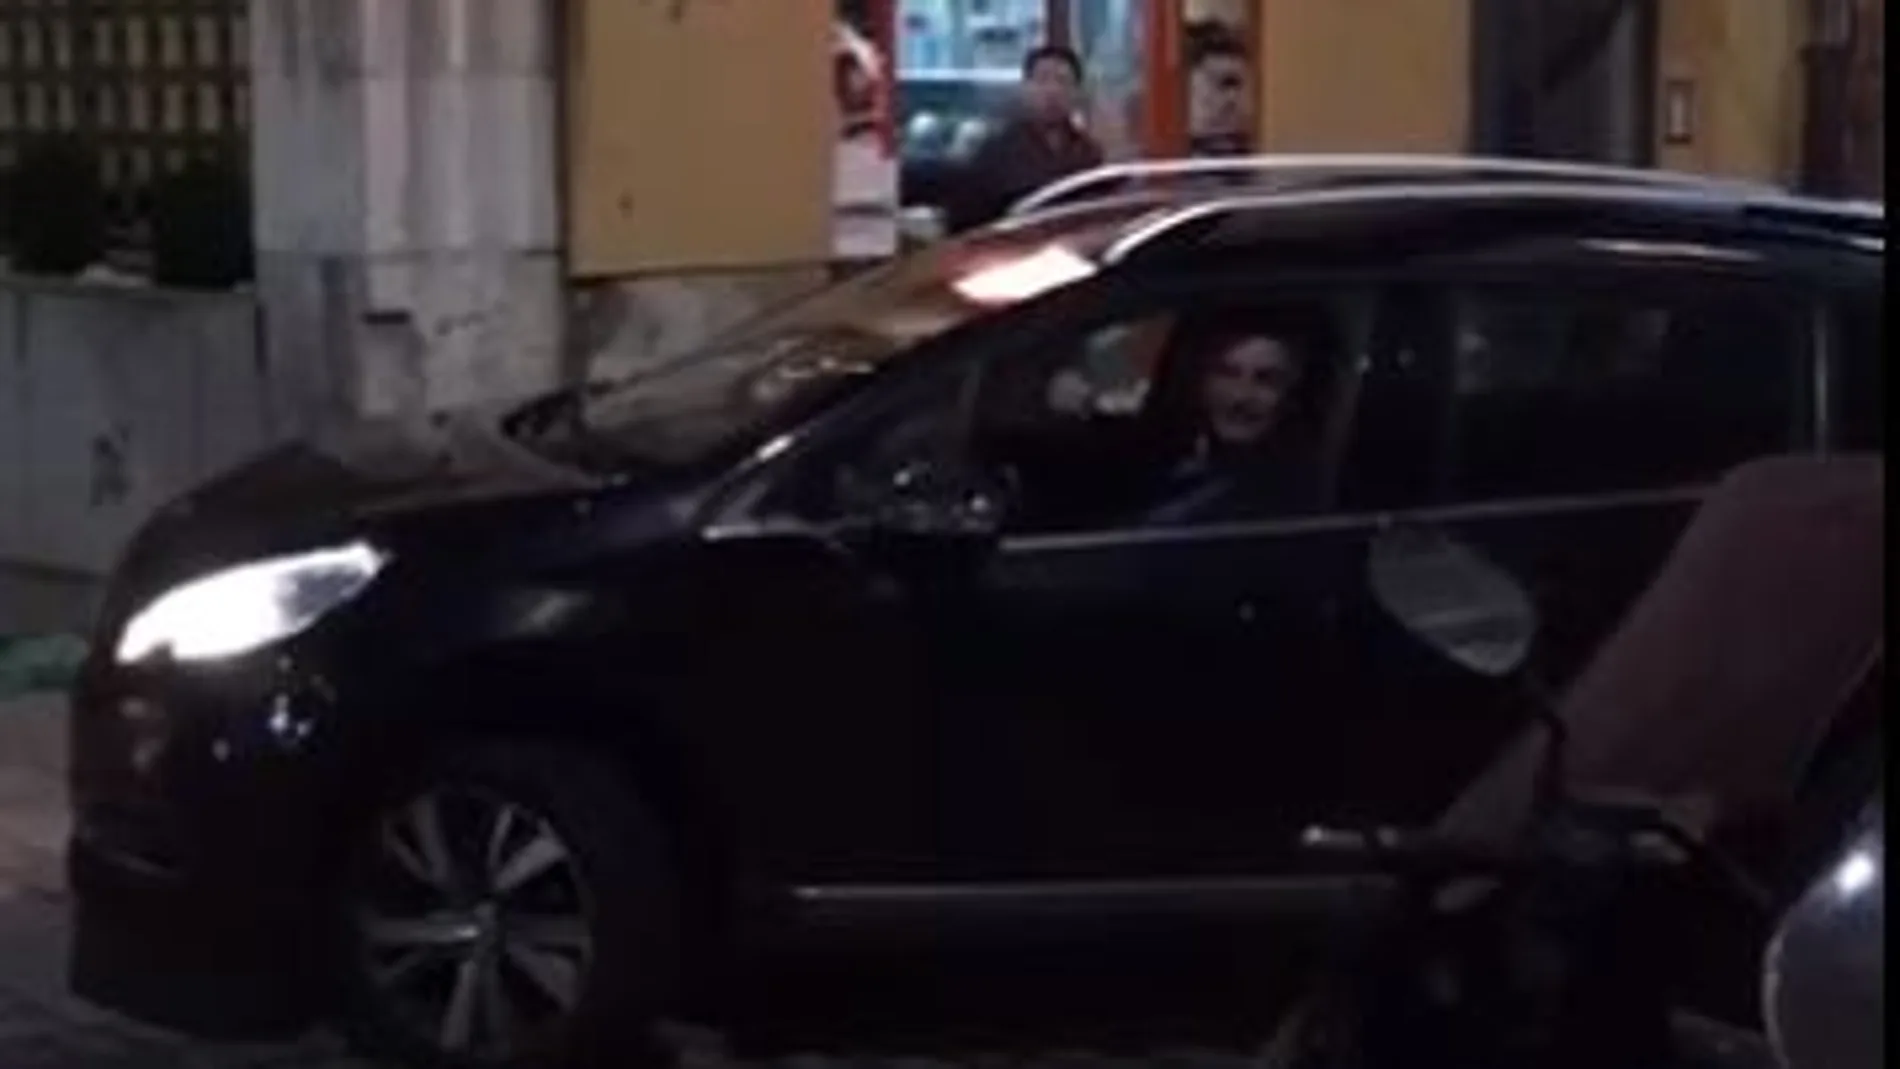 Polémica por un vídeo de Miguel Ángel Revilla conduciendo en dirección contraria en la tarde de Nochebuena